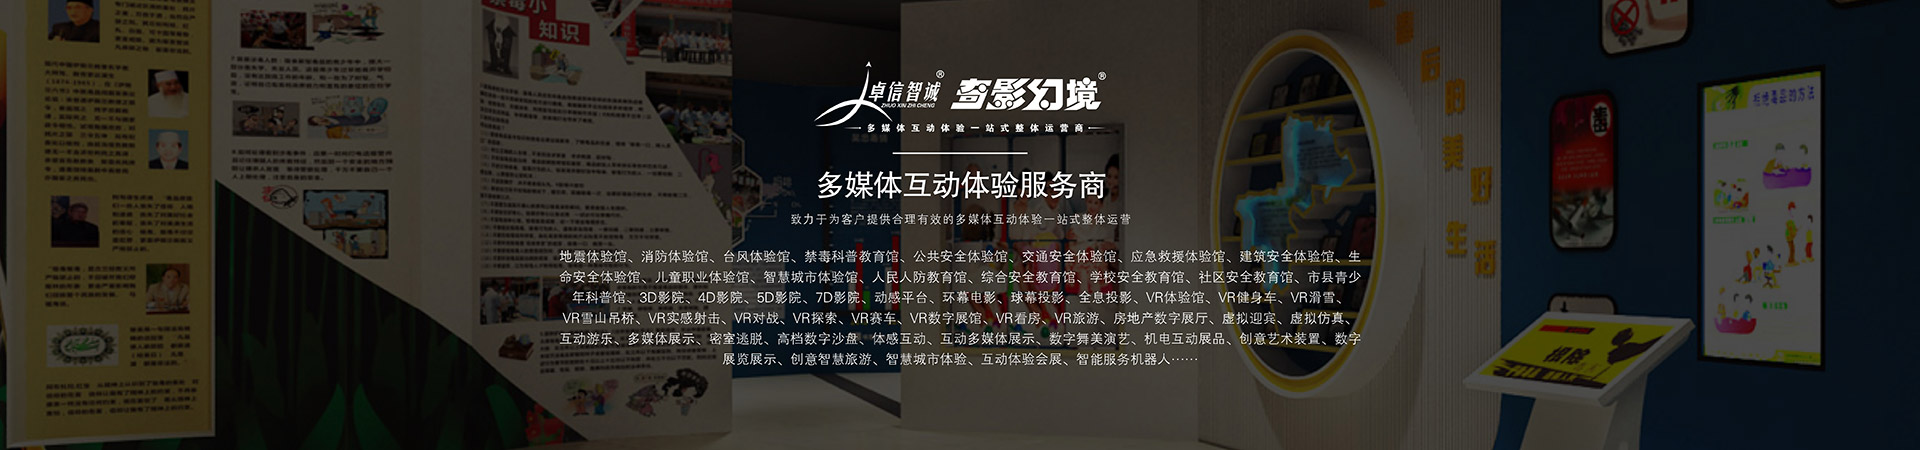 公共安全3D电子沙盘公共安全5D影院公共安全刘徽海岛算经公共安全VR实感模拟射击公共安全120~360度环幕3D立体展示系统